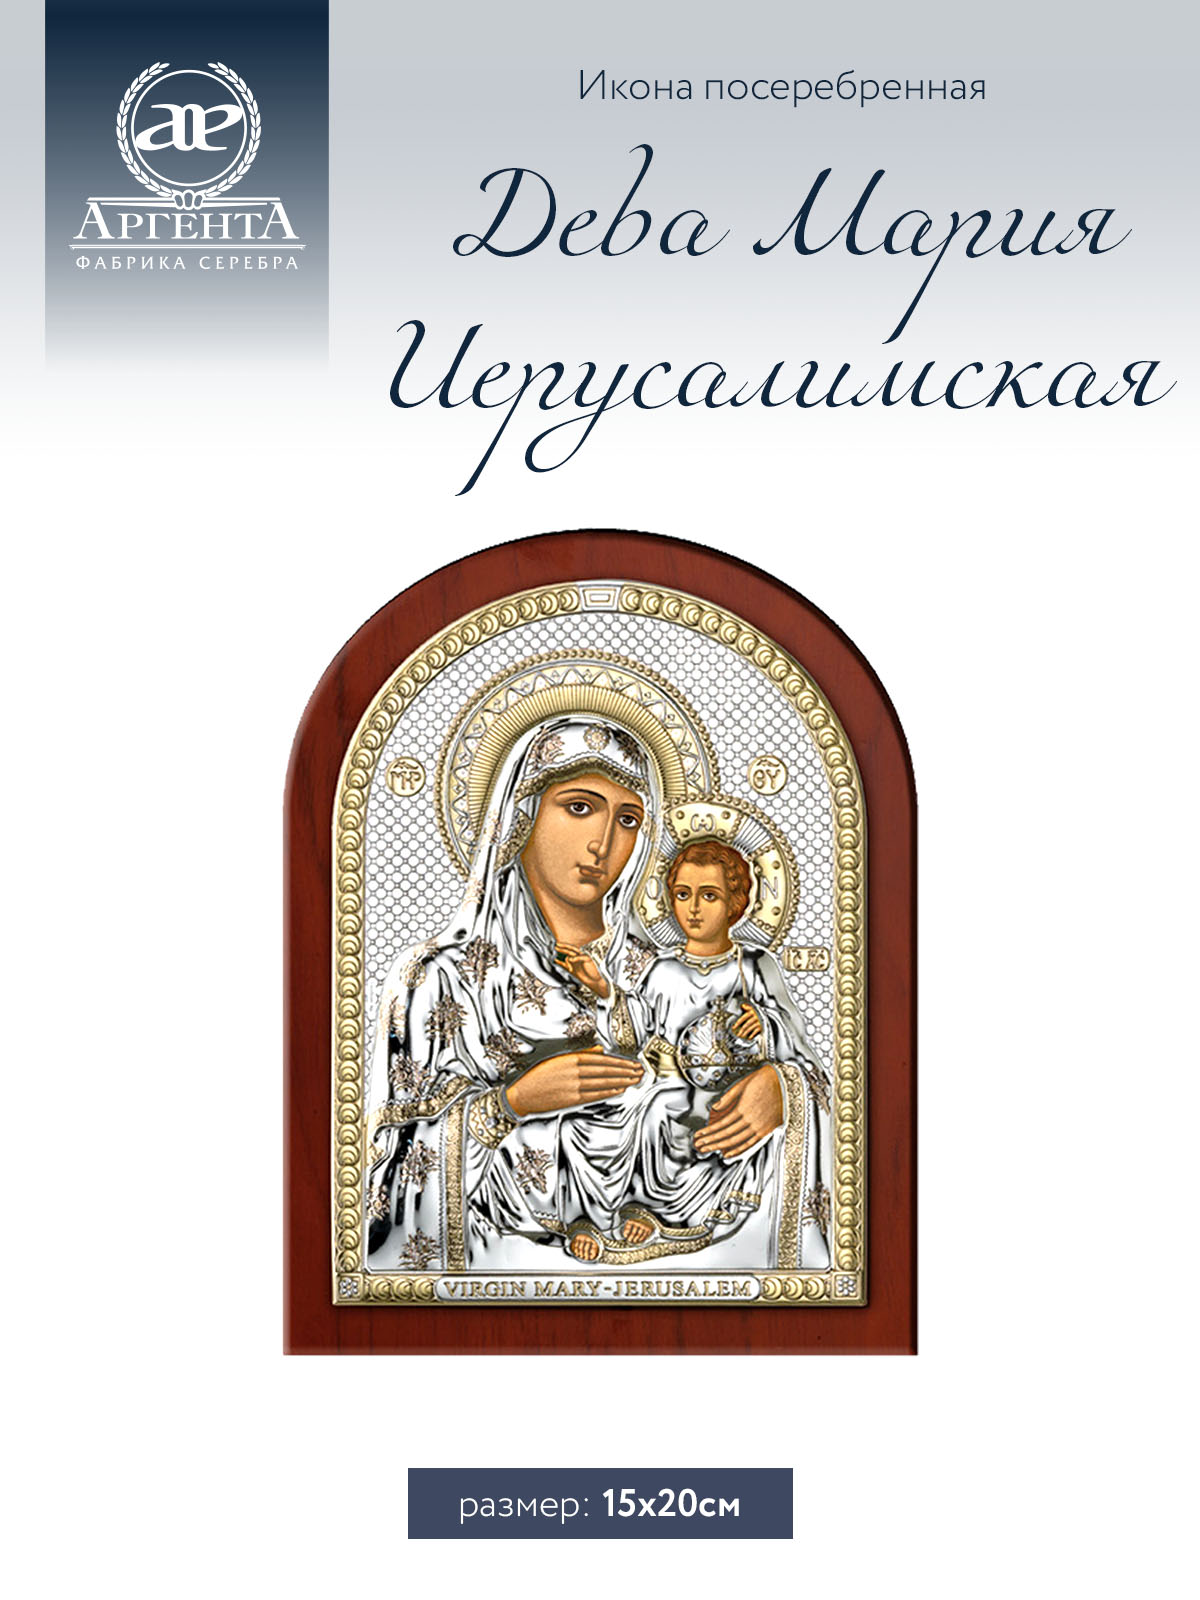 Икона Аргента Дева Мария Иерусалимская 15*20